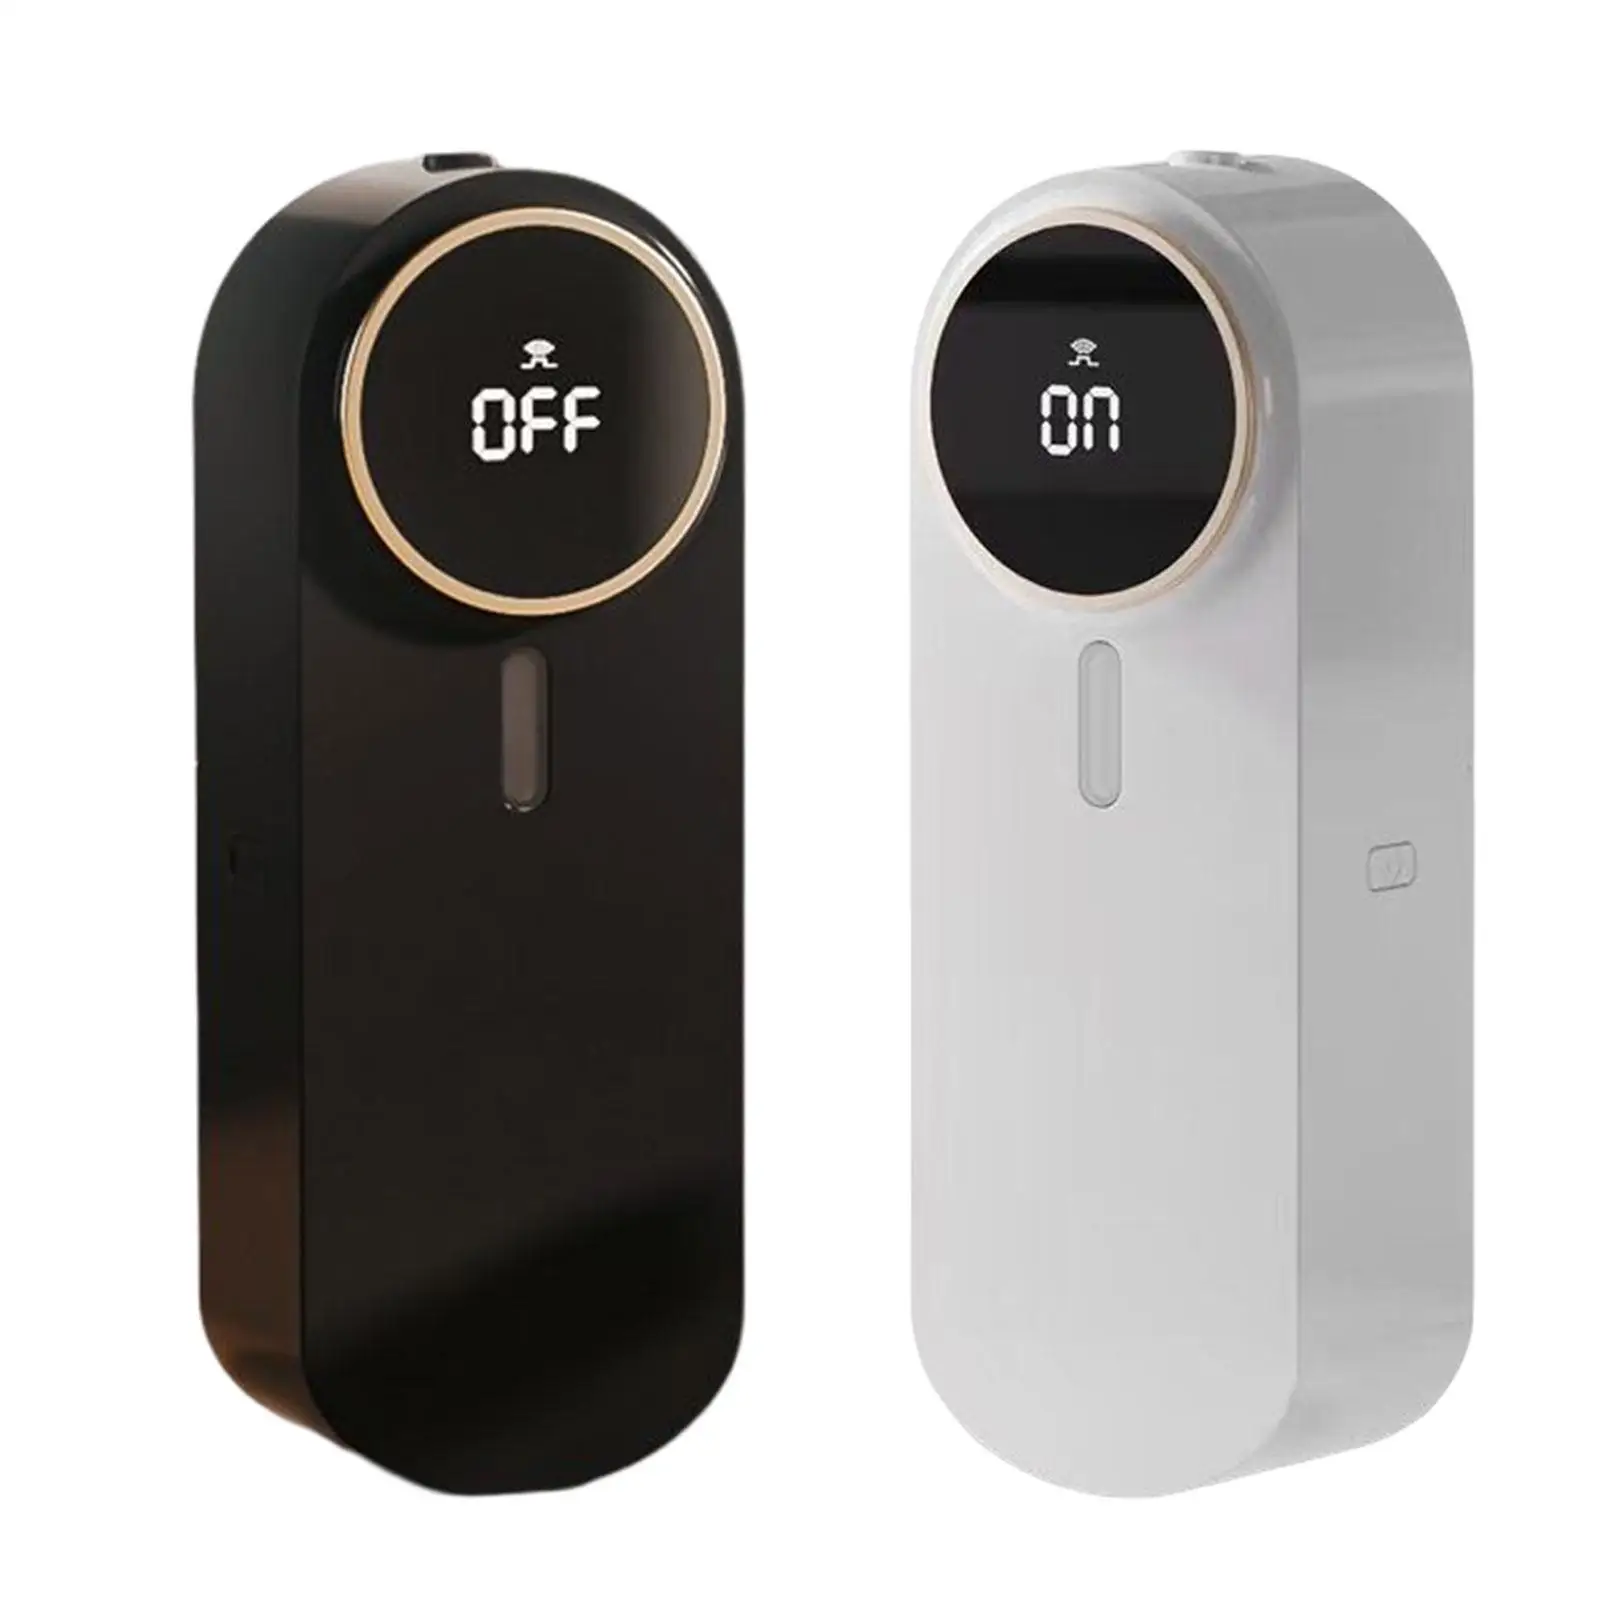 Fragrance Diffuser Scent Dispenser 5 Speed Adjustable for Bedroom Office